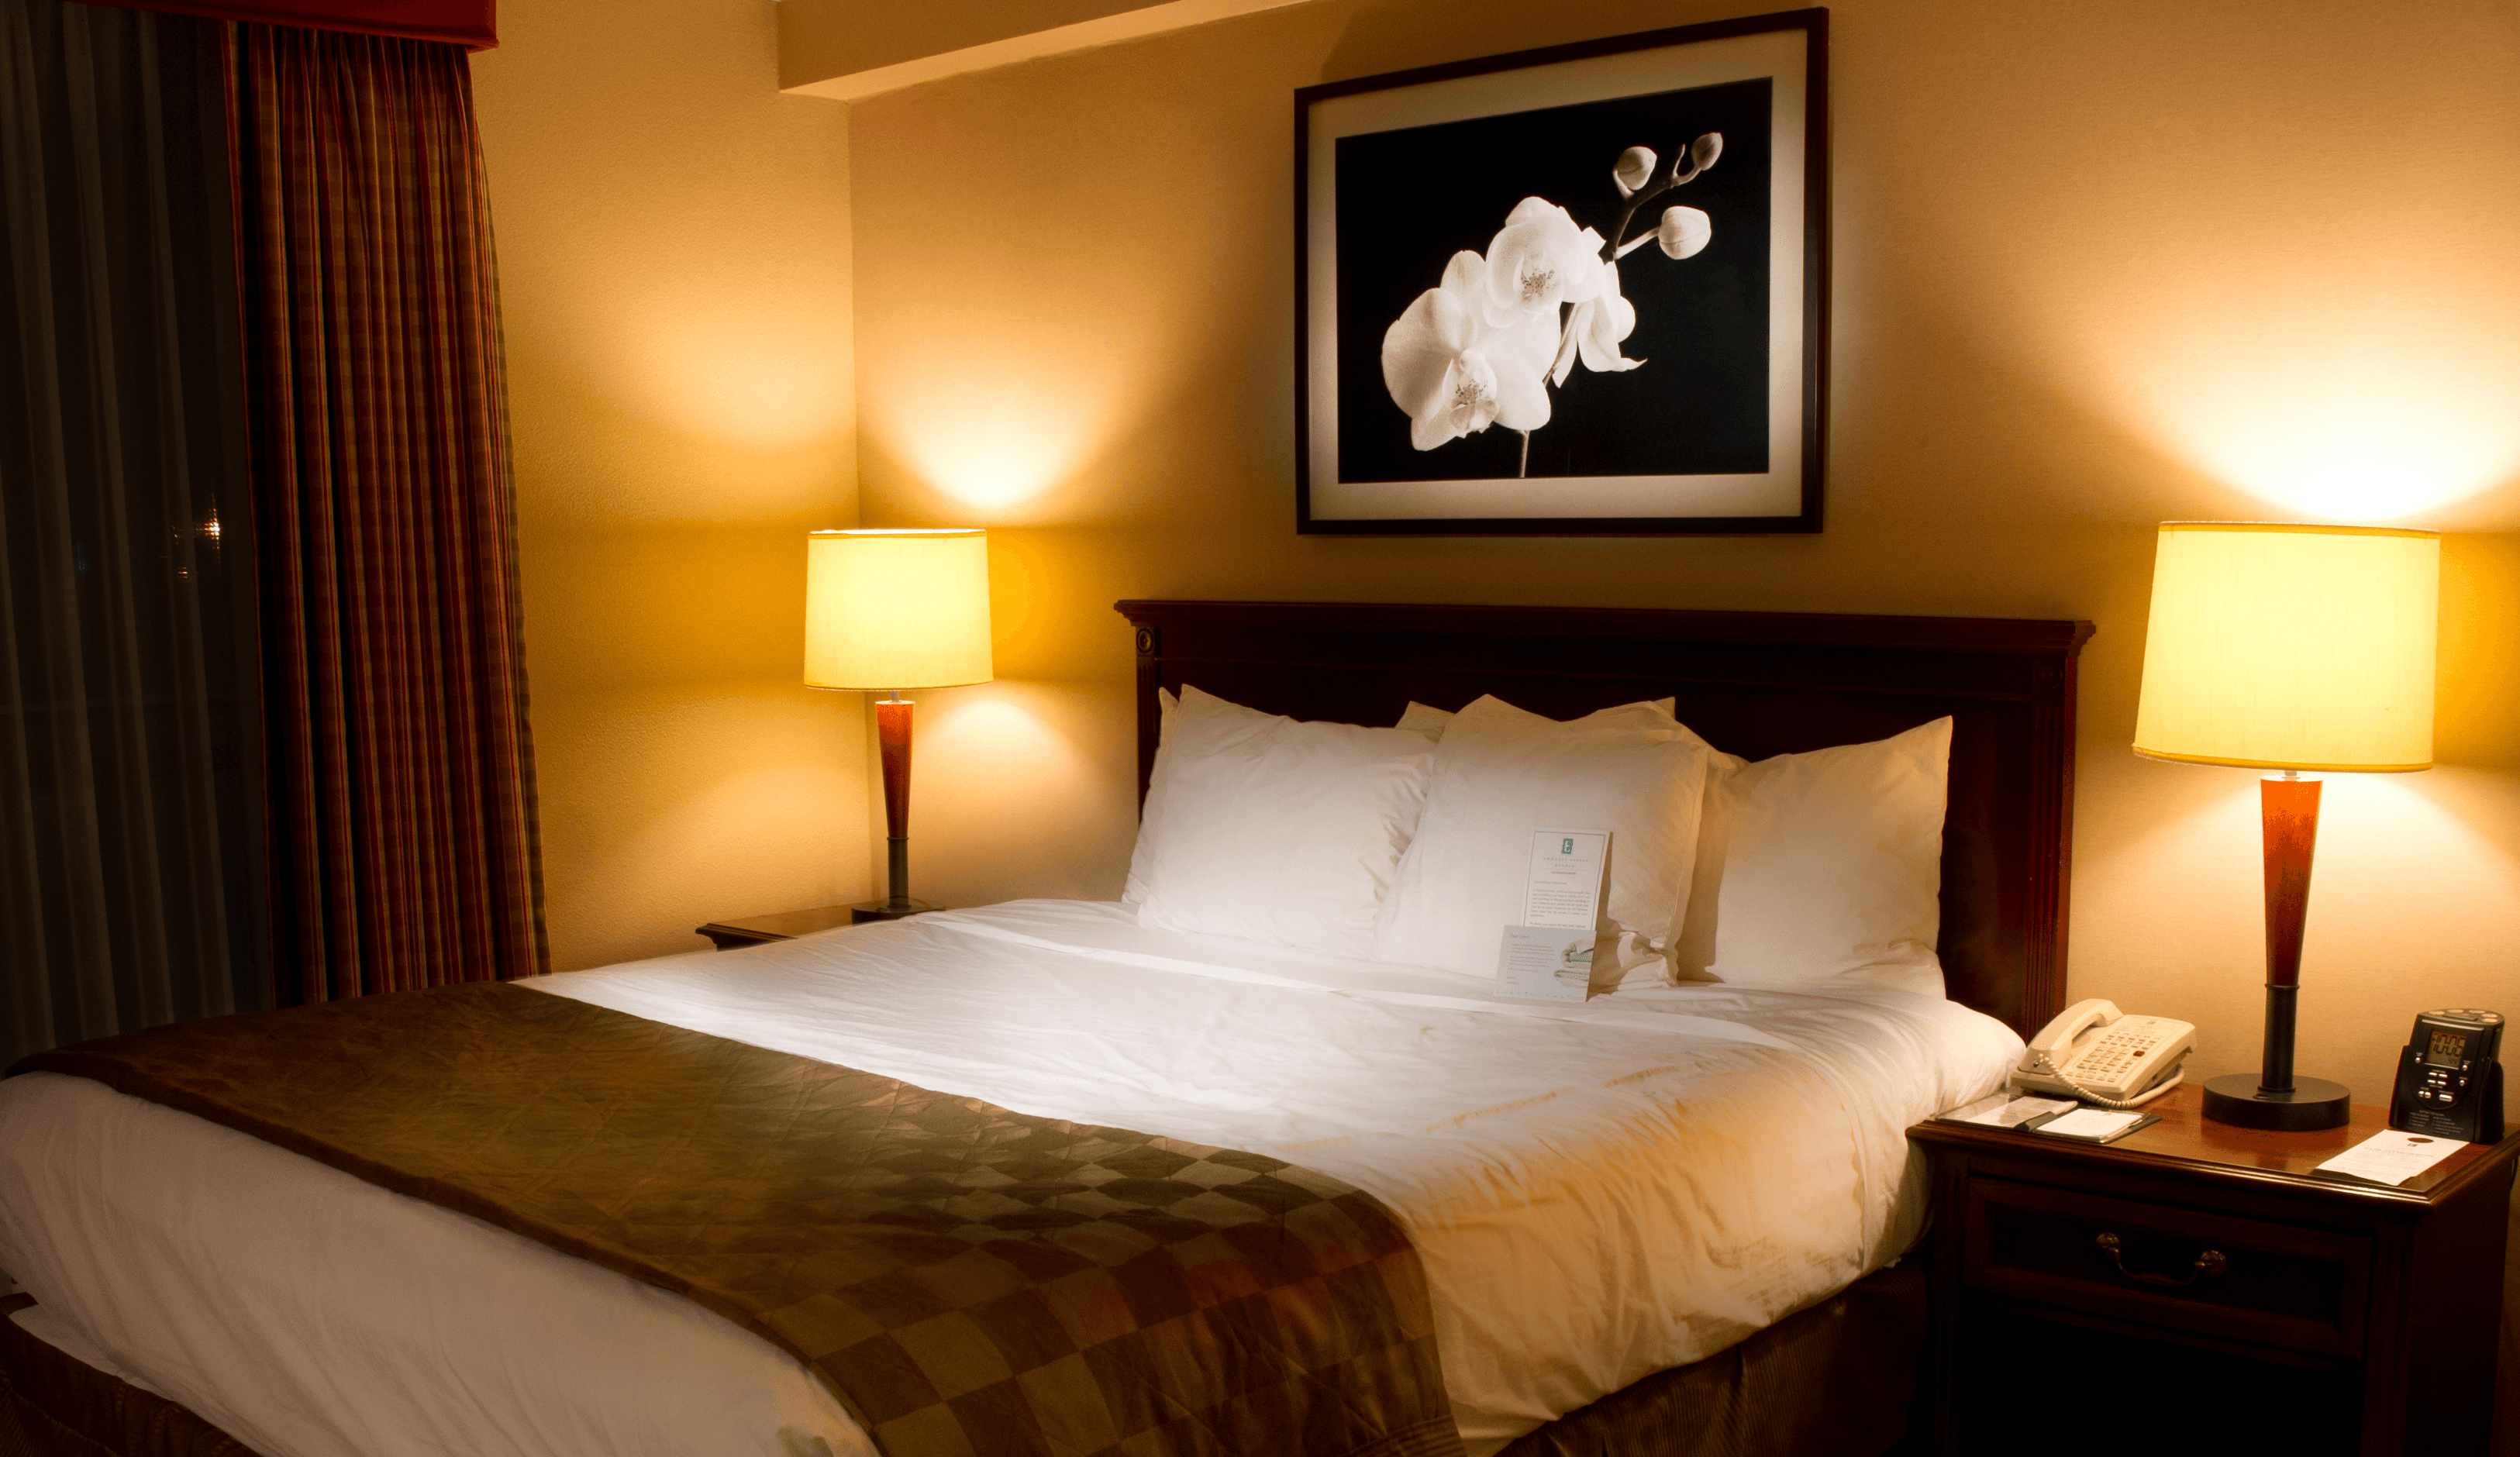 Как заправить кровать в гостинице